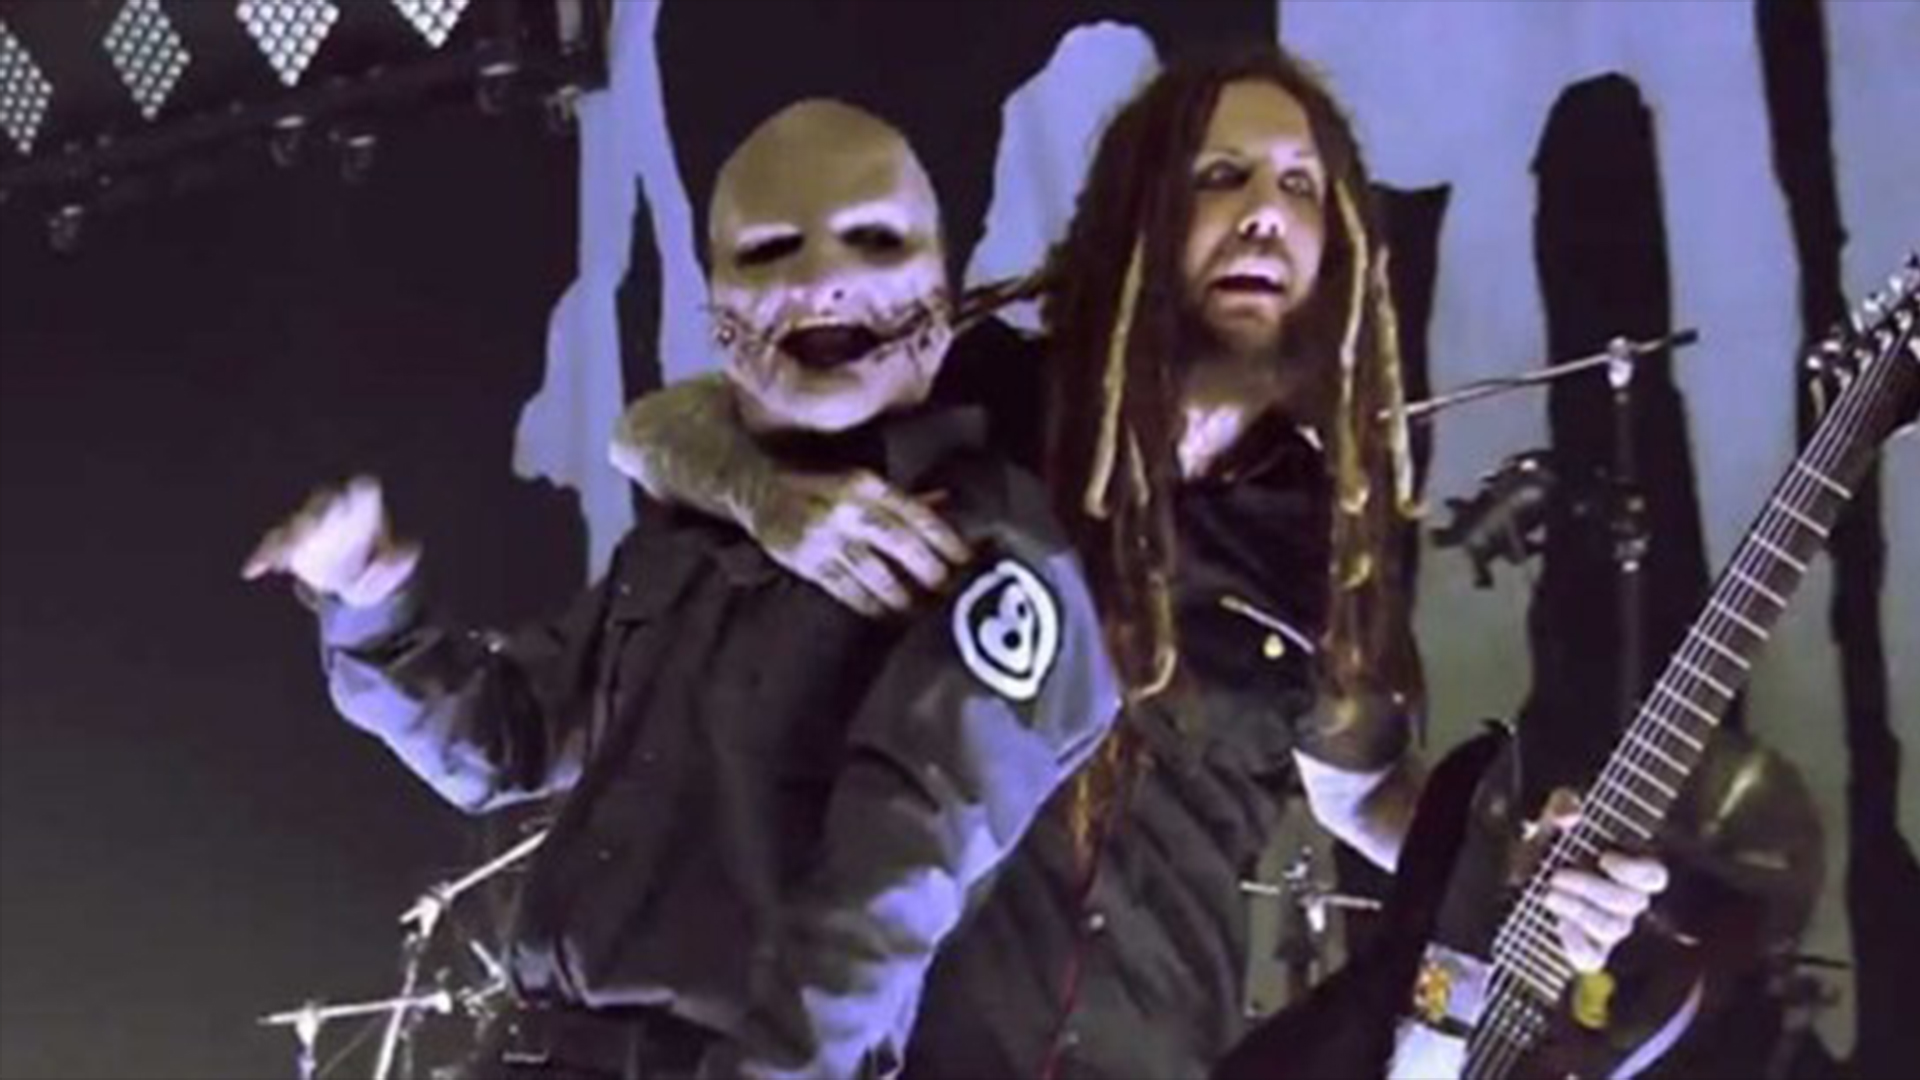 Ο Corey Taylor μαζί με τους Korn στη σκηνή για το τραγούδι που συνεργάστηκαν